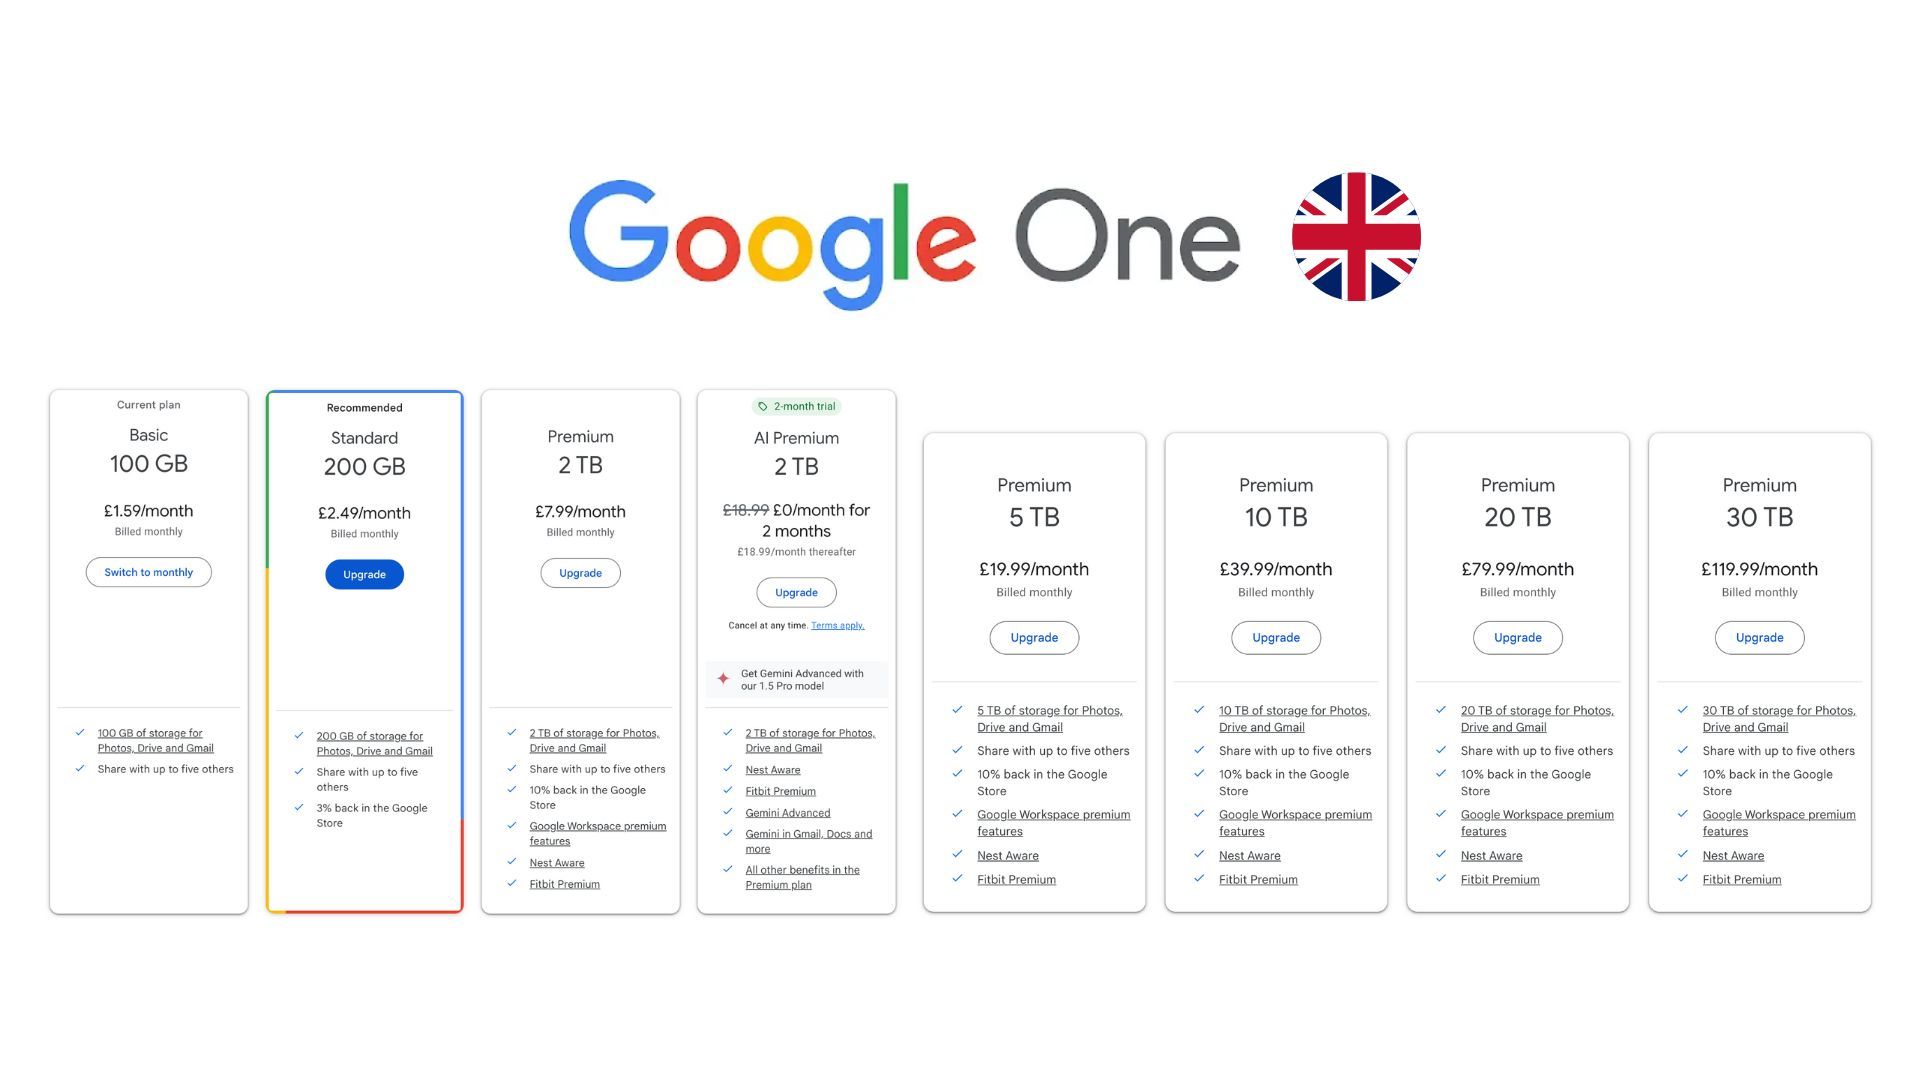 Camadas do Google One no Reino Unido